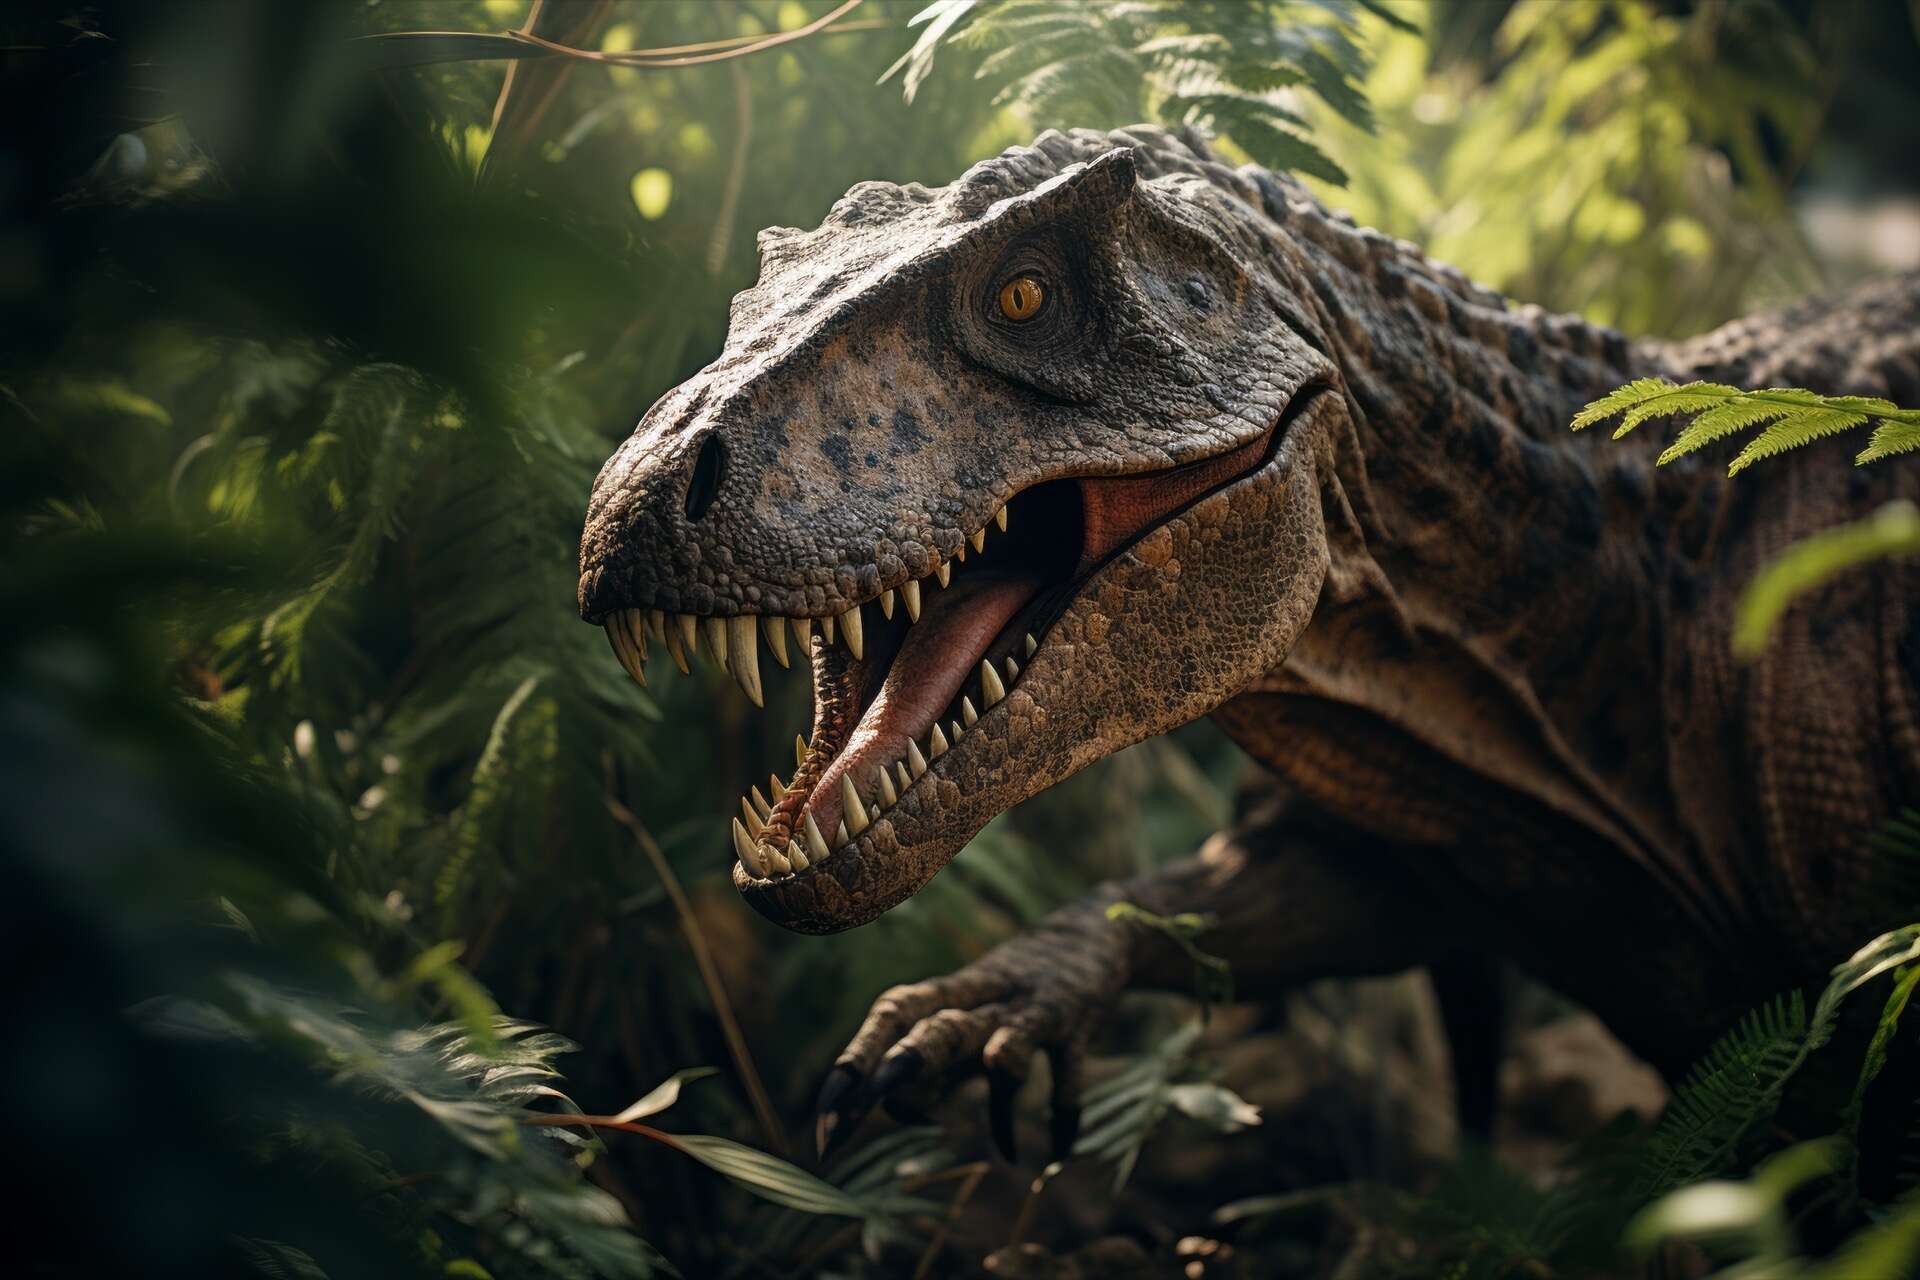 Un tyrannosaure découvert avec son dernier repas dans l’estomac